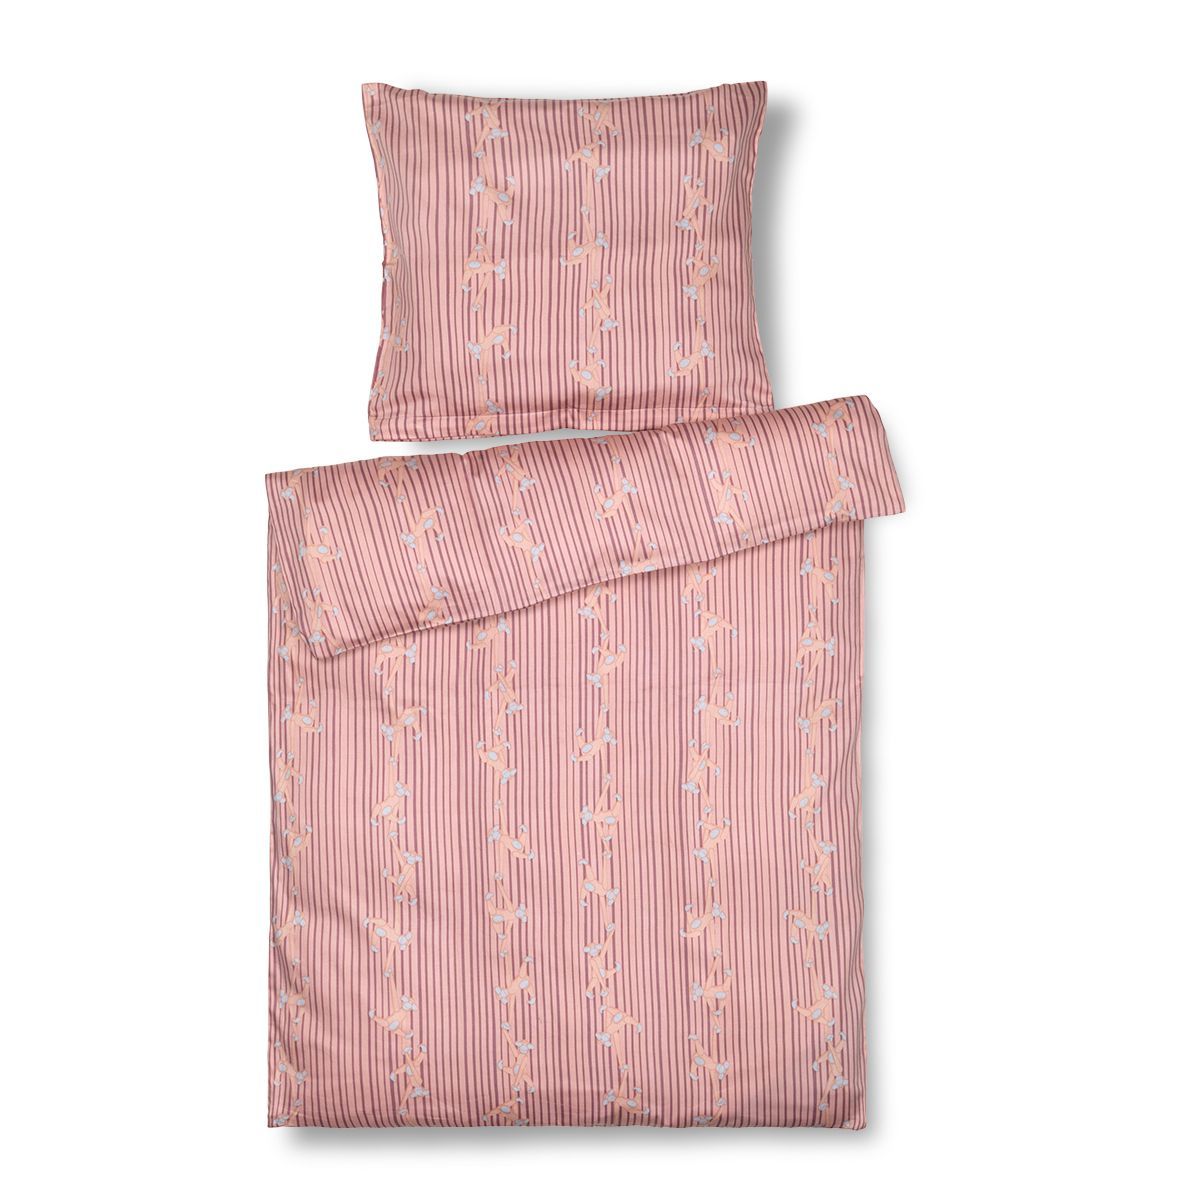 Kay Bojesen Bed liinavaatteen apina Junior 100x140 cm, vaaleanpunainen